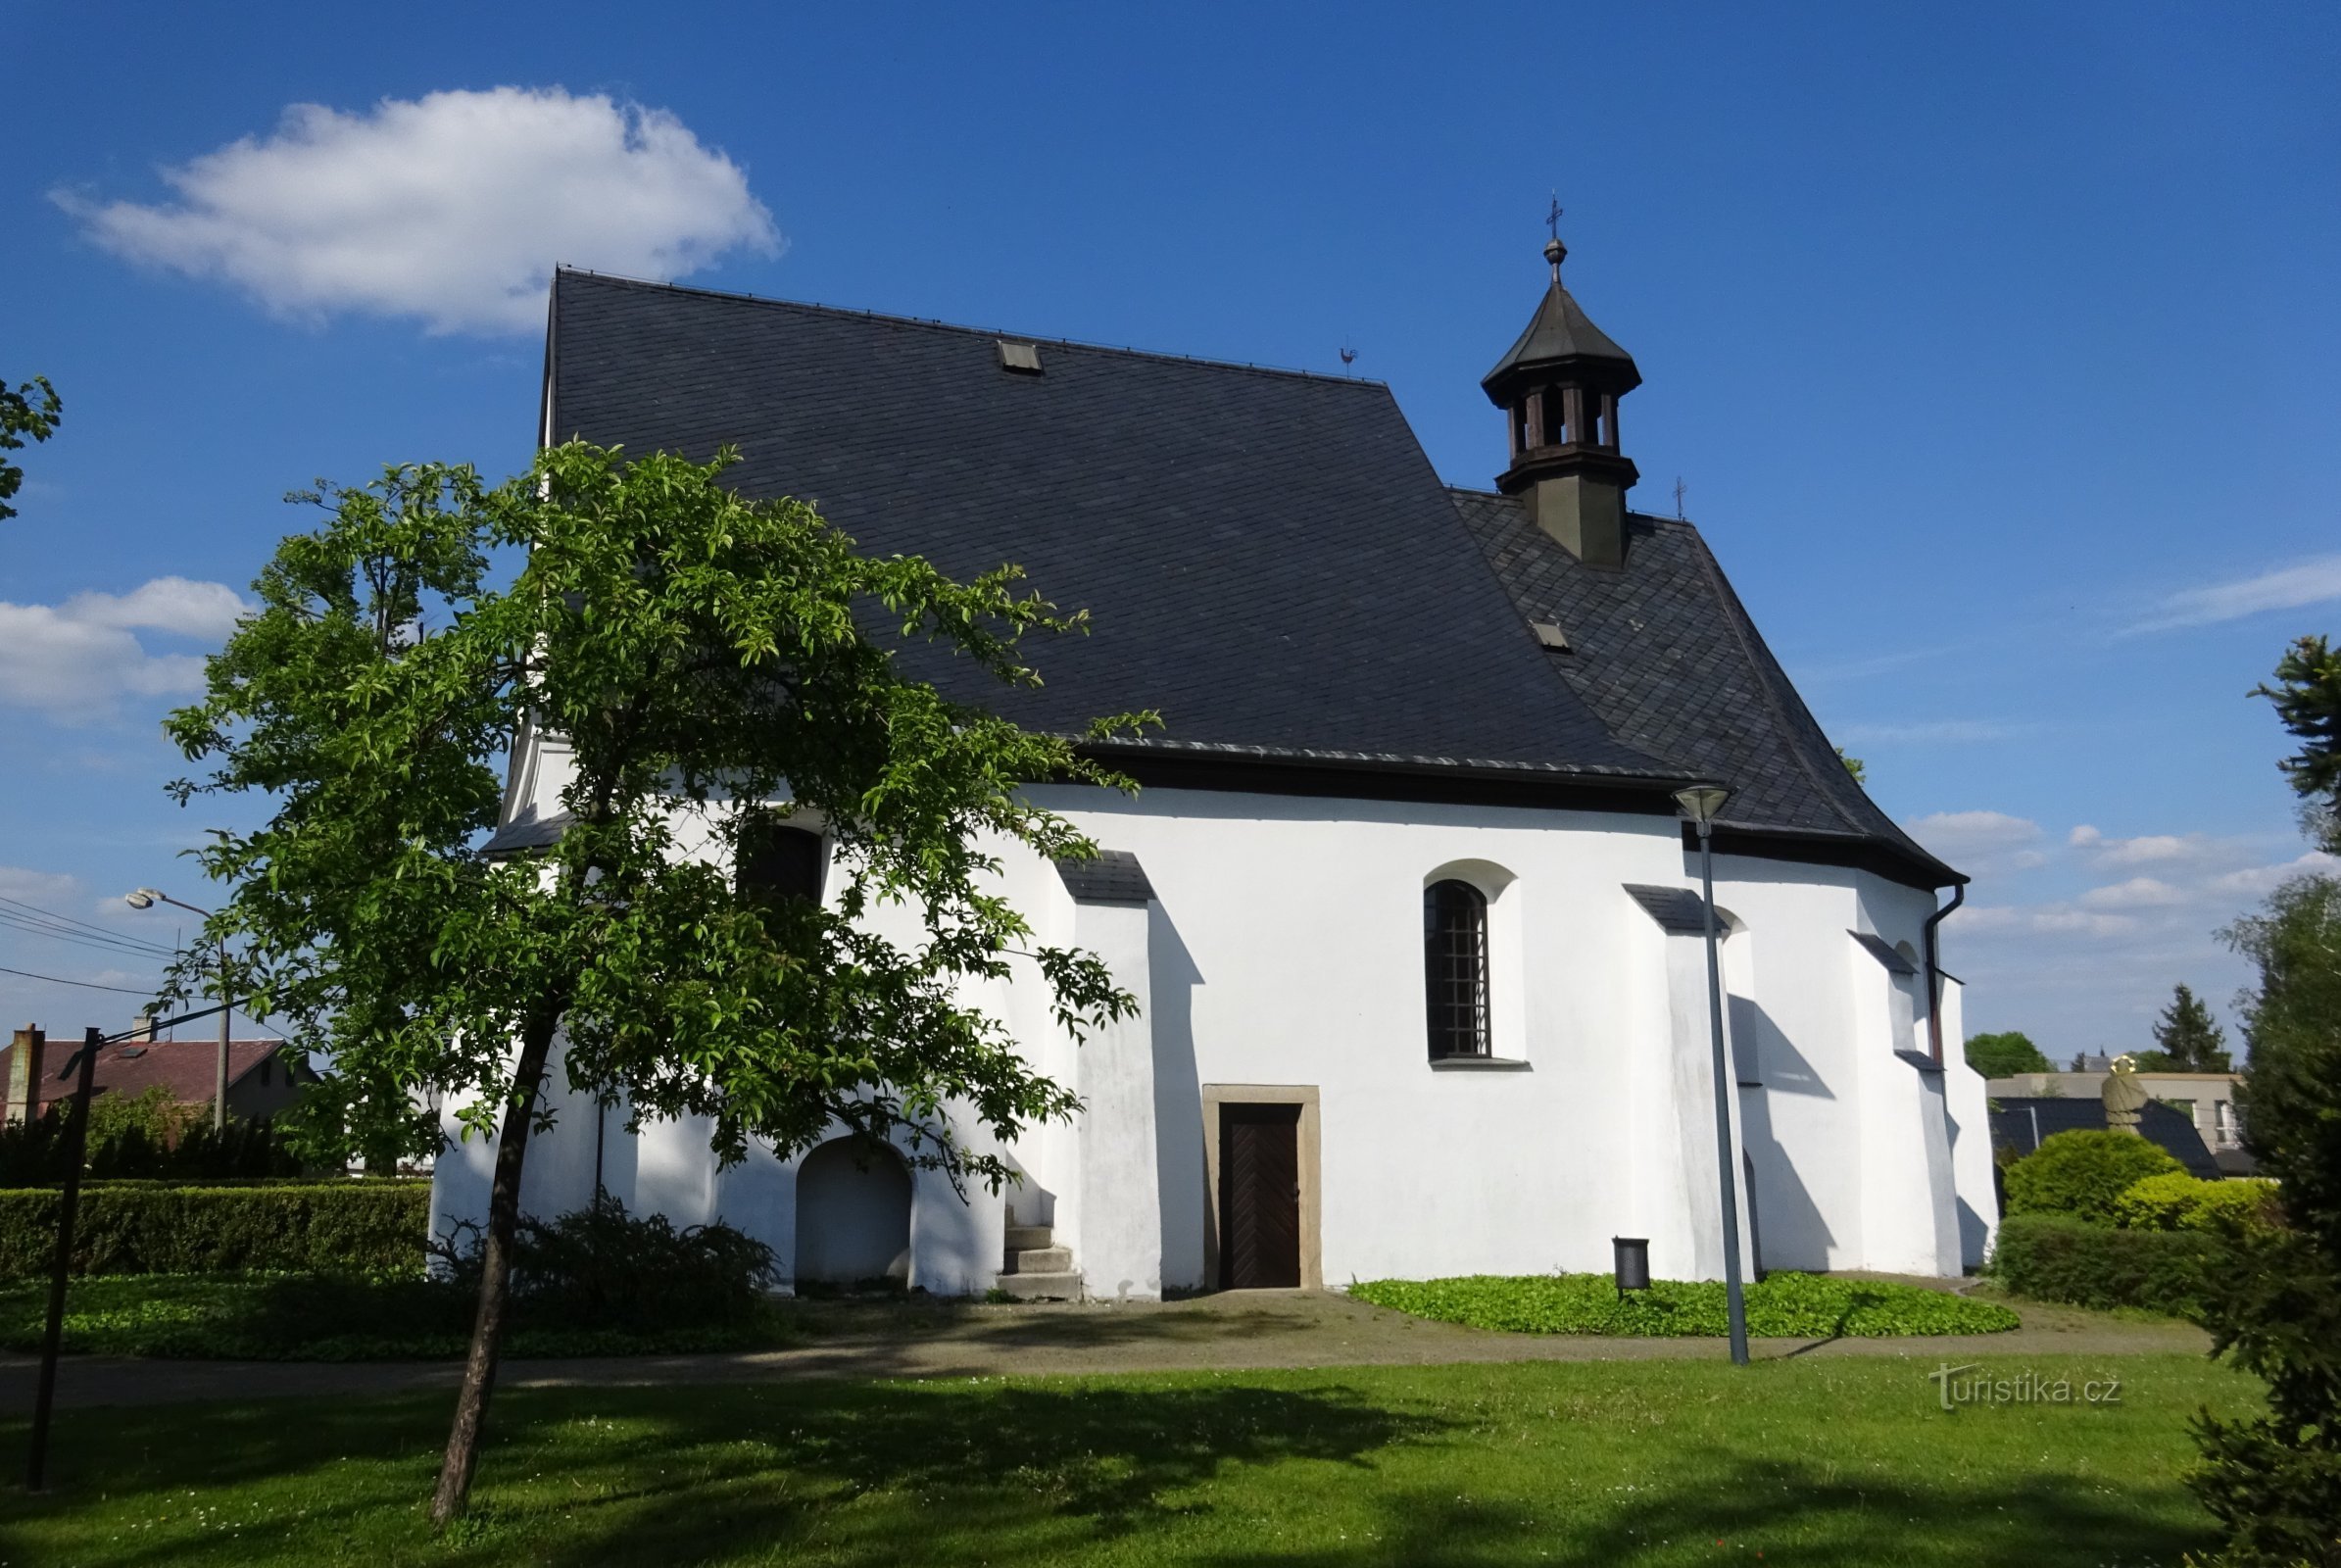 Klimkovice - igreja de St. Trindade